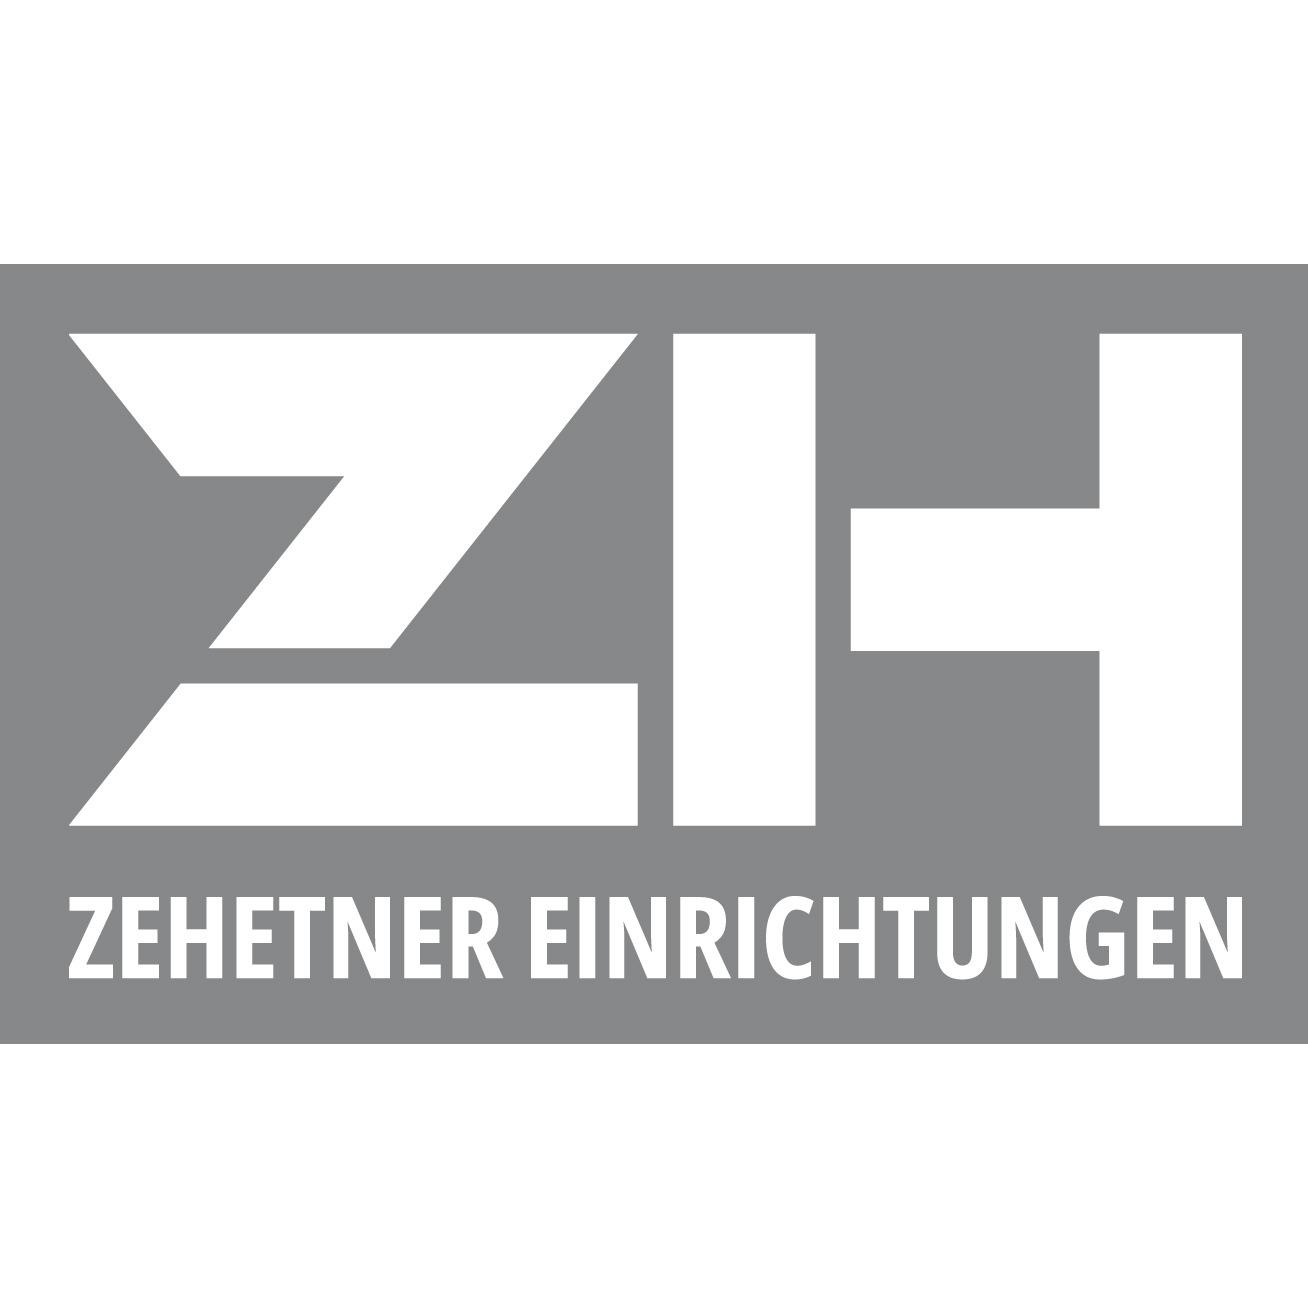 Logo von ZEHETNER EINRICHTUNGEN GmbH